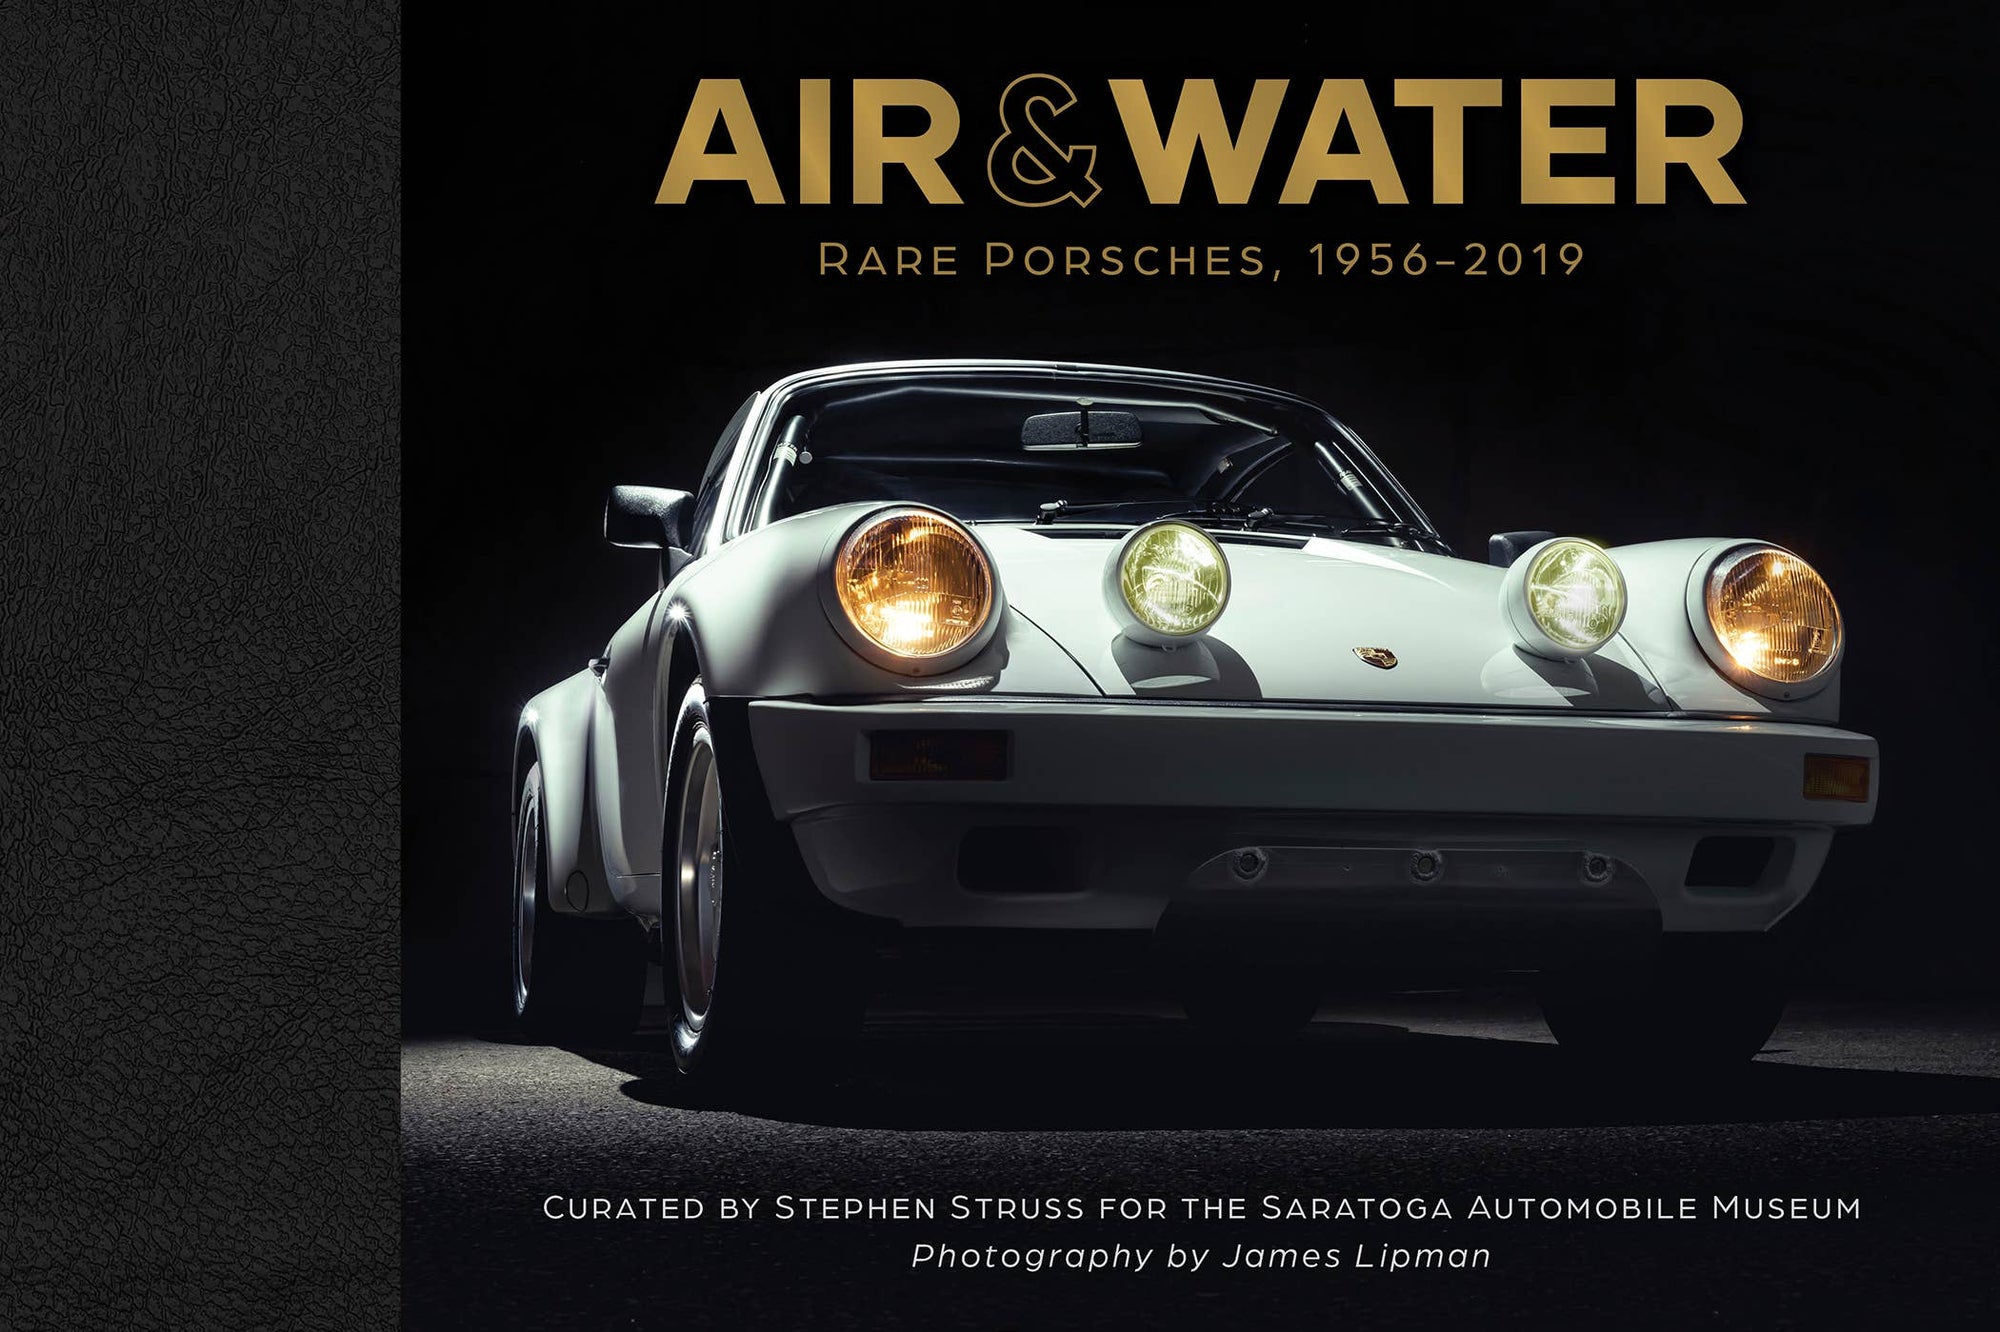 Air & Water: Rare Porsches 1956-2019